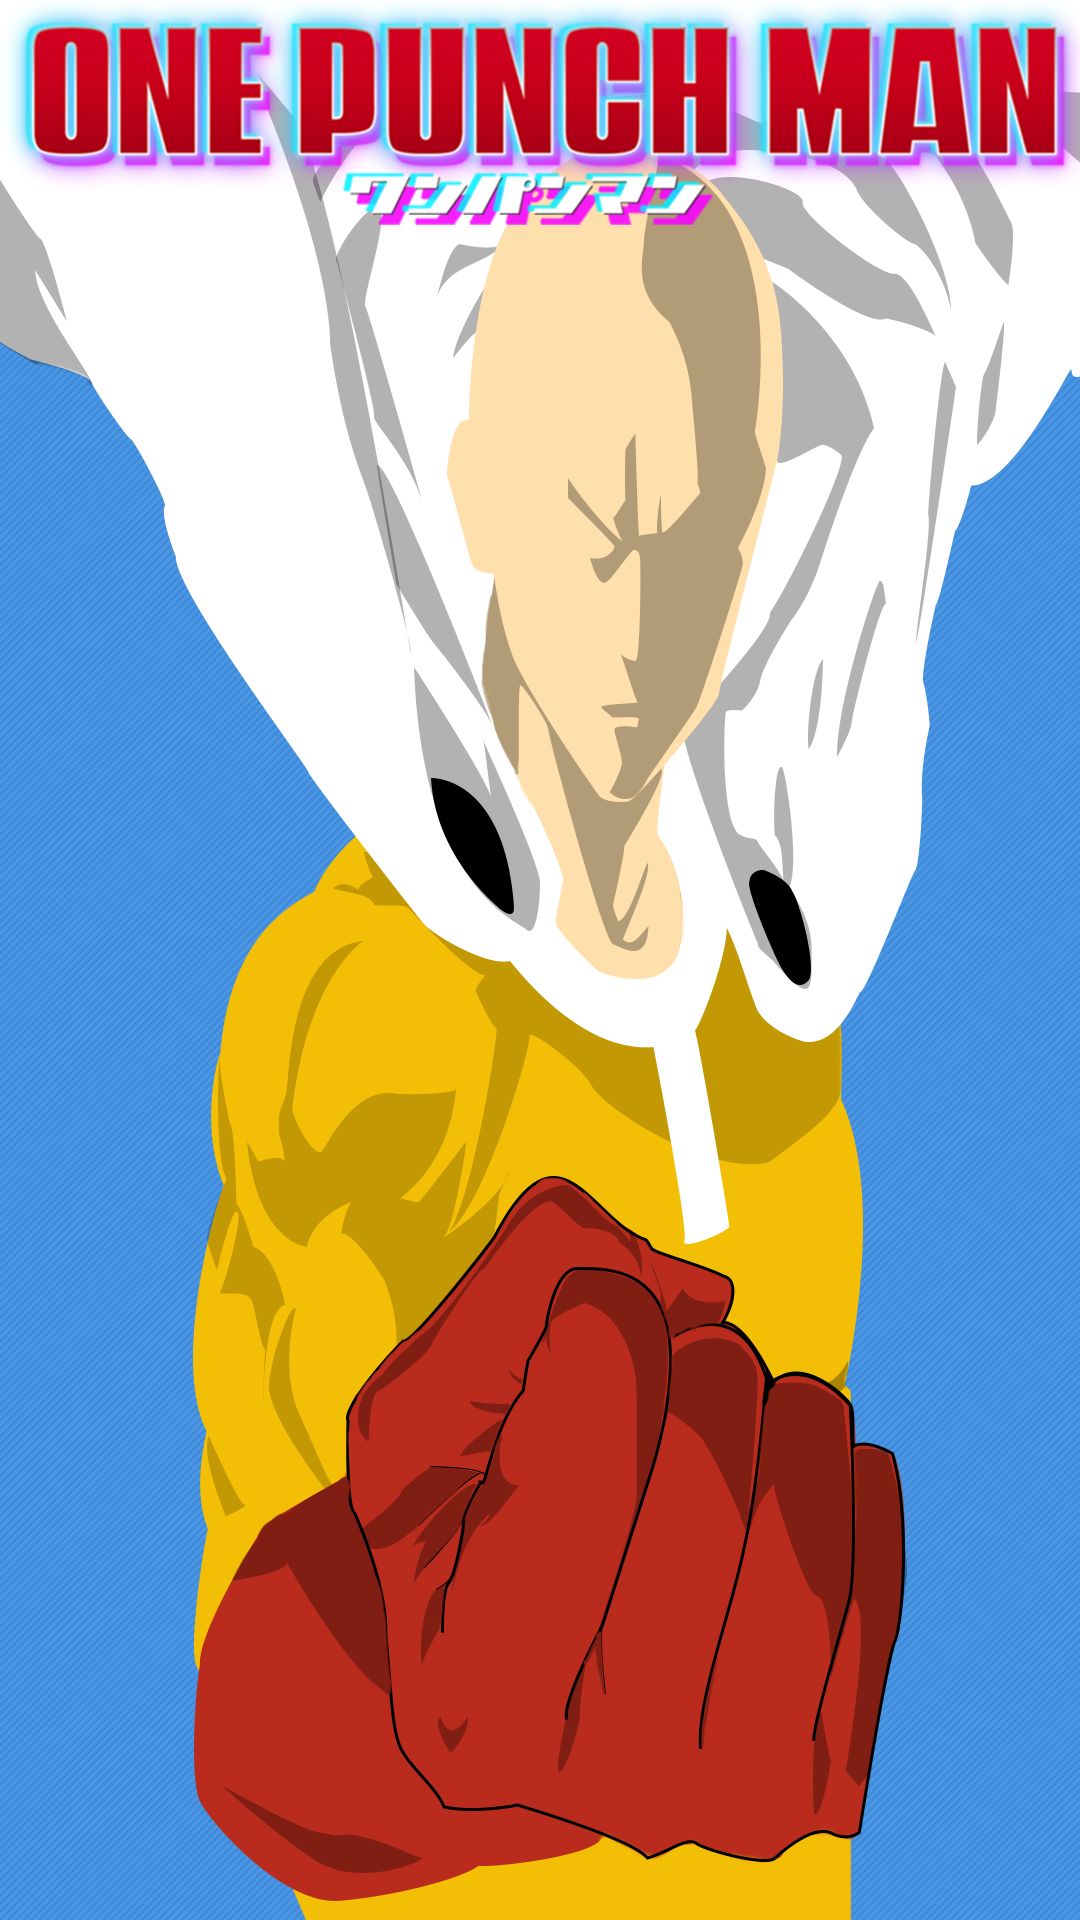 Descarga gratuita de fondo de pantalla para móvil de Animado, Minimalista, Saitama (Hombre De Un Solo Golpe), One Punch Man.